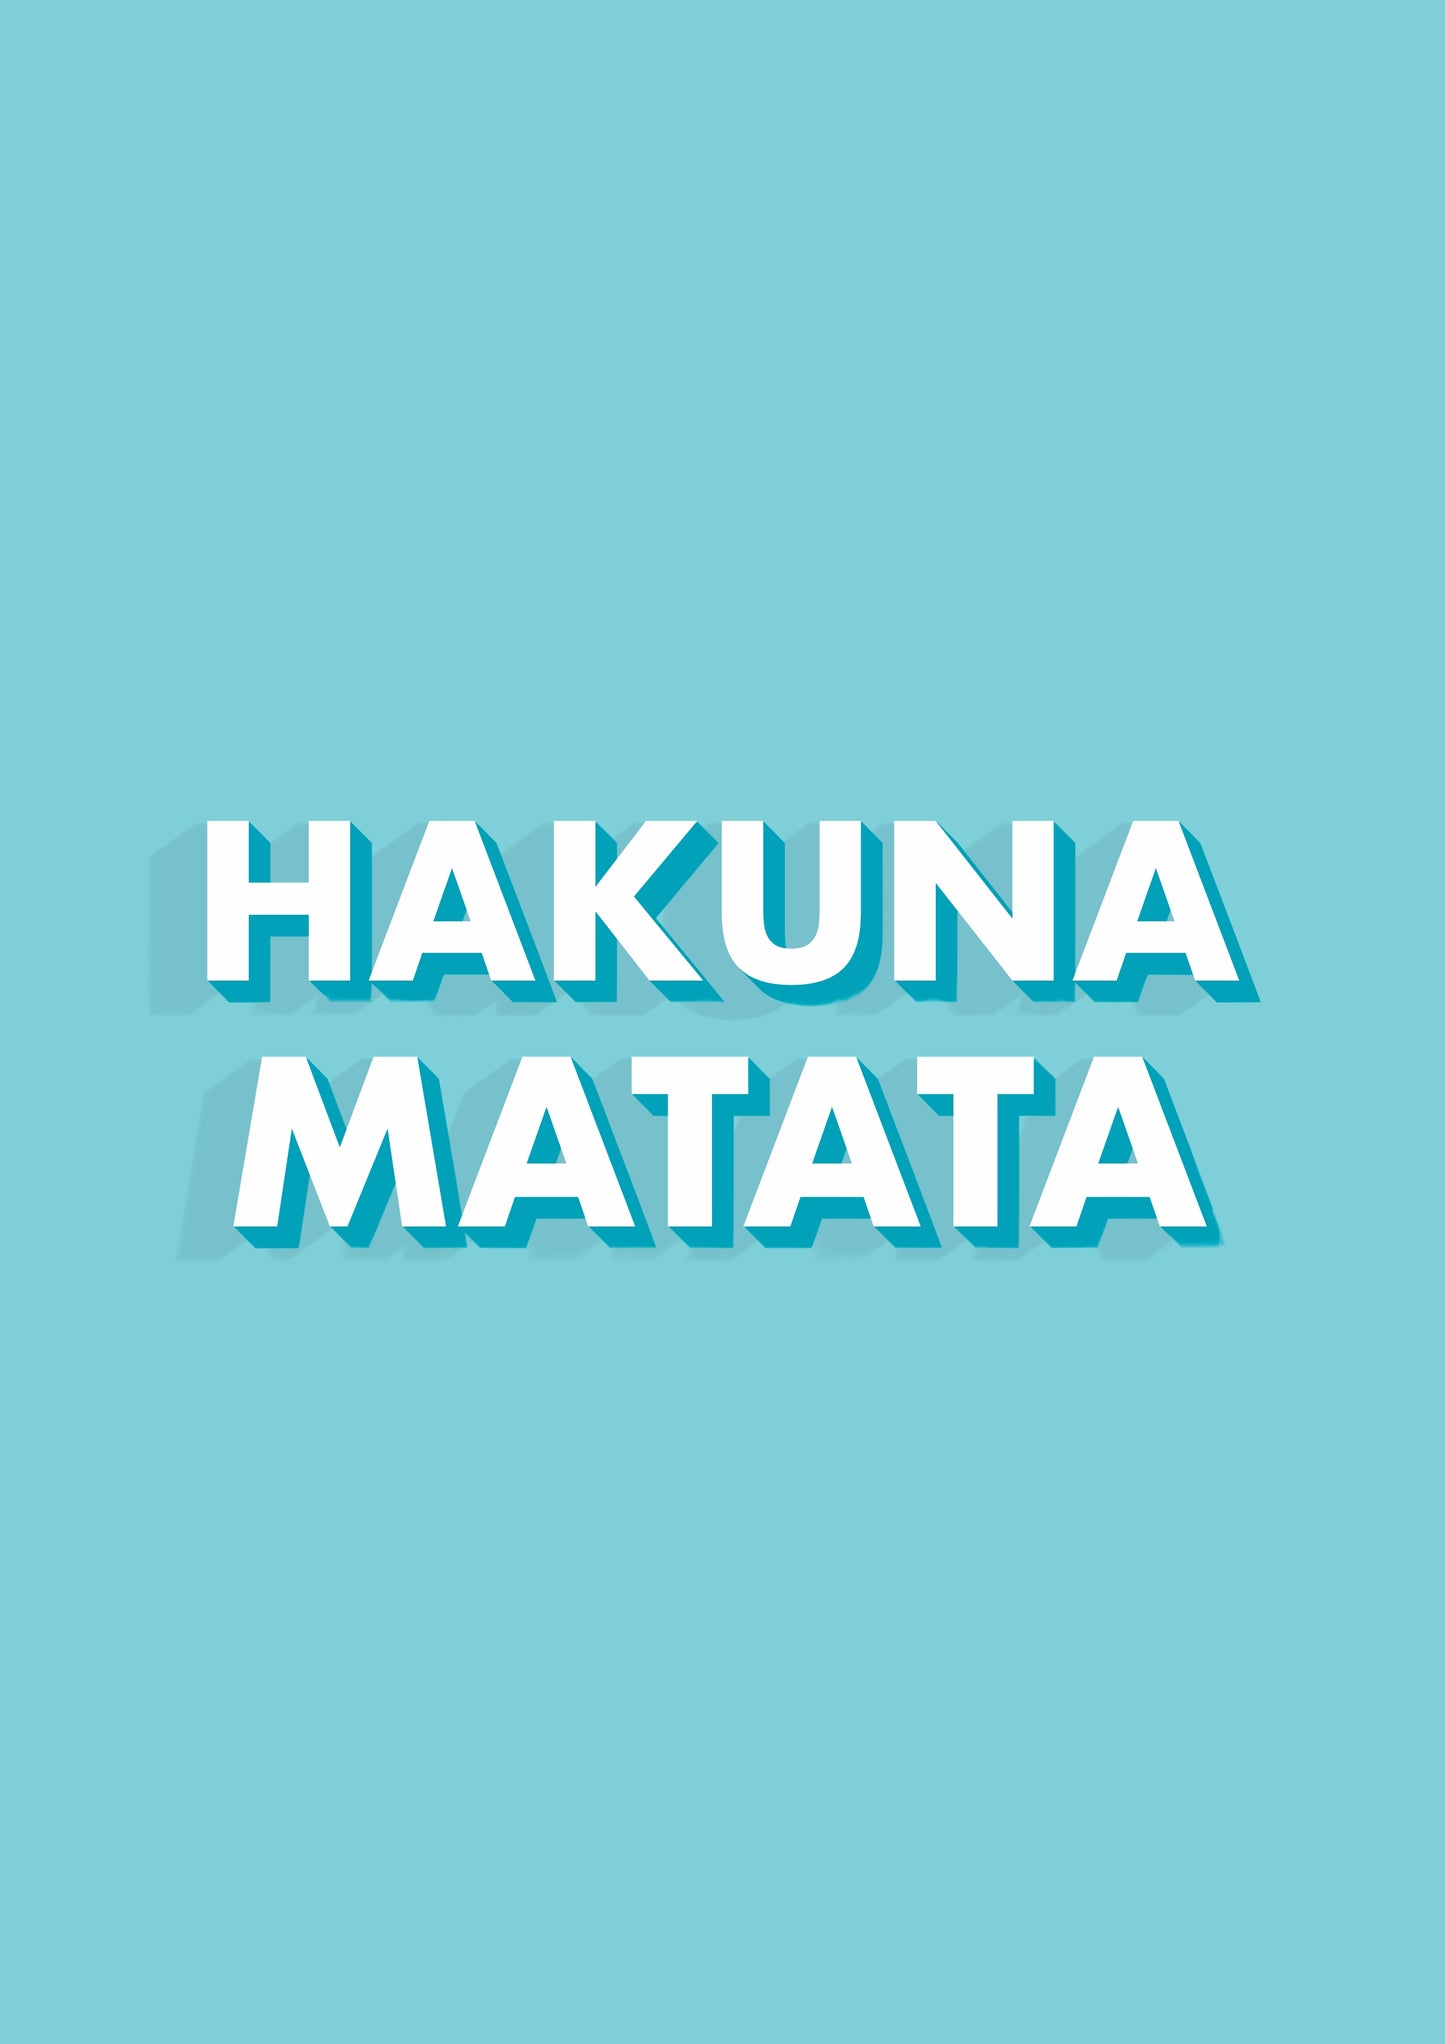 Hakuna Matata Typography Blue Print